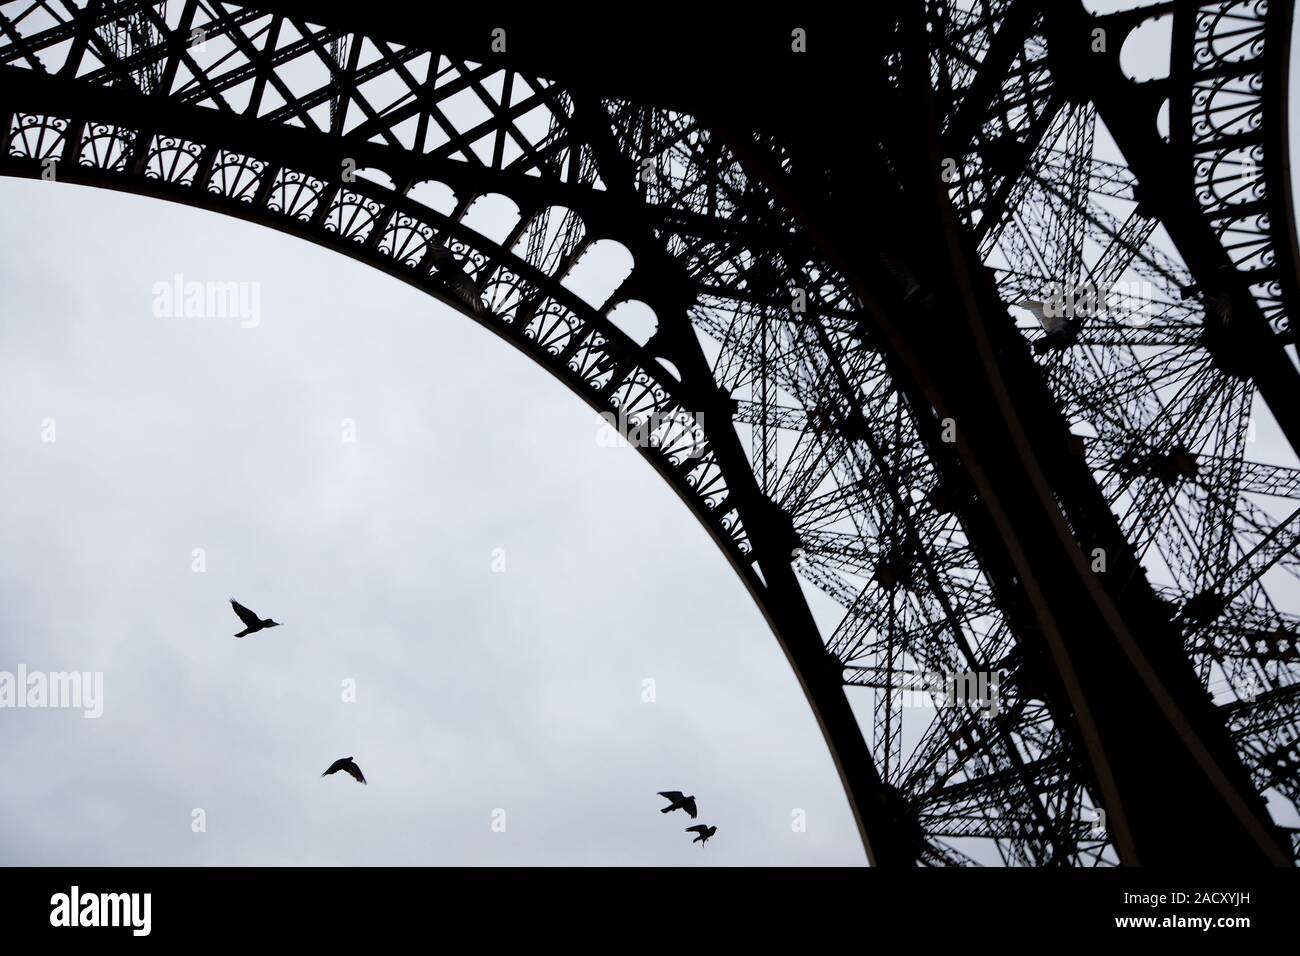 Les pigeons volant sous la Tour Eiffel au cours de jour de pluie Banque D'Images